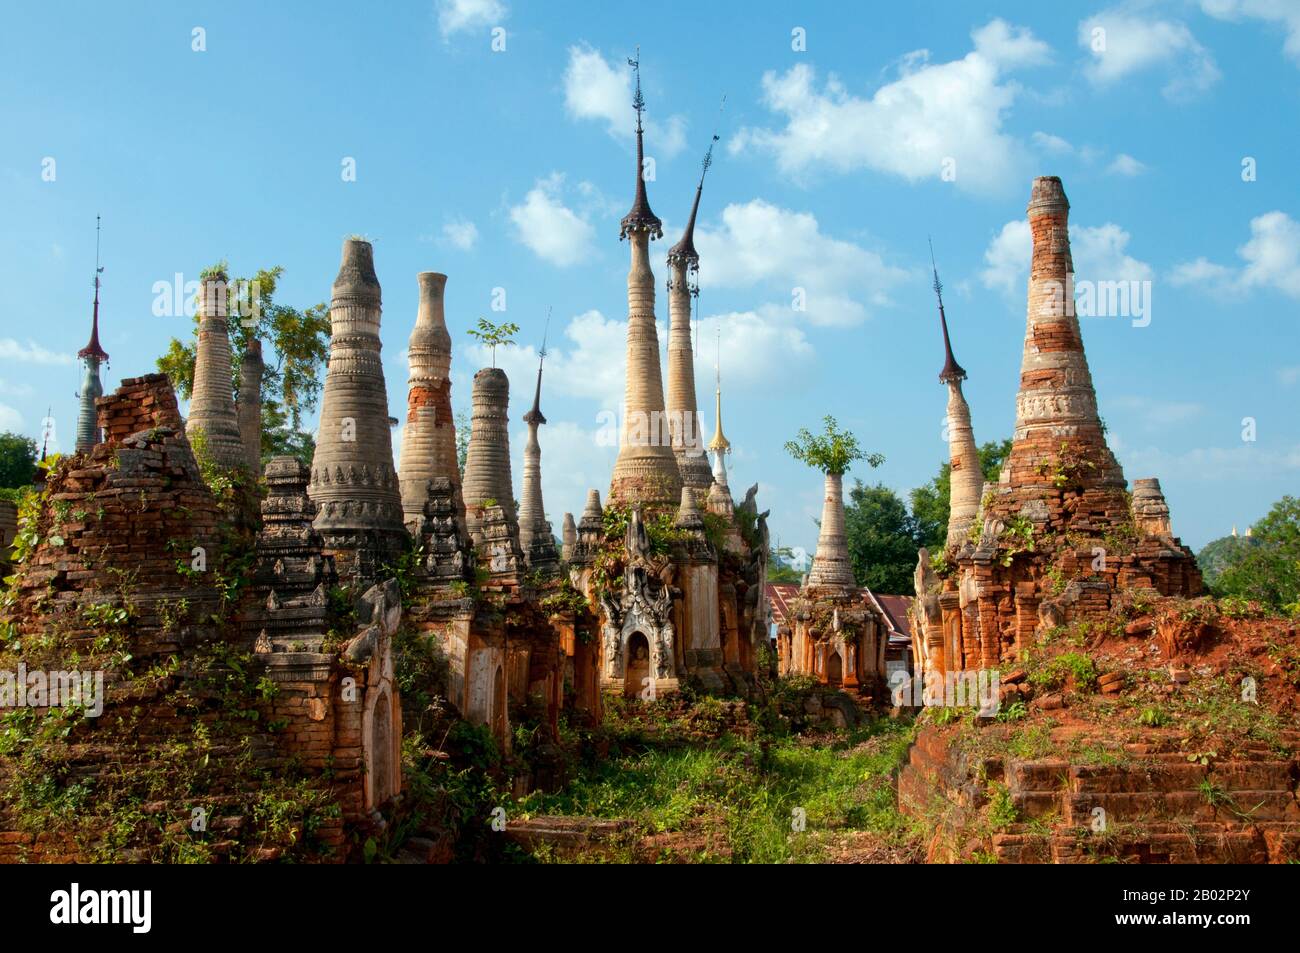 Die Shwe Indein Pagode ist eine Sammlung buddhistischer Stupas aus dem 17. Und 18. Jahrhundert. Der Inle Lake ist ein Süßwassersee, der in der Nyaungshwe Township des Taunggyi Distrikts Shan State, einem Teil der Shan Hills in Myanmar (Birma), liegt. Er ist der zweitgrößte See in Myanmar mit einer geschätzten Fläche von 44,9 Quadratmeilen (116 km2) und einer der höchsten mit einer Höhe von 2.900 Fuß (880 m). Die etwa 70.000 Einwohner des Inle Lake (Intha genannt) leben in vier an den See grenzenden Städten, in zahlreichen kleinen Dörfern am Ufer des Sees und am See selbst. Das gesamte Stockfoto